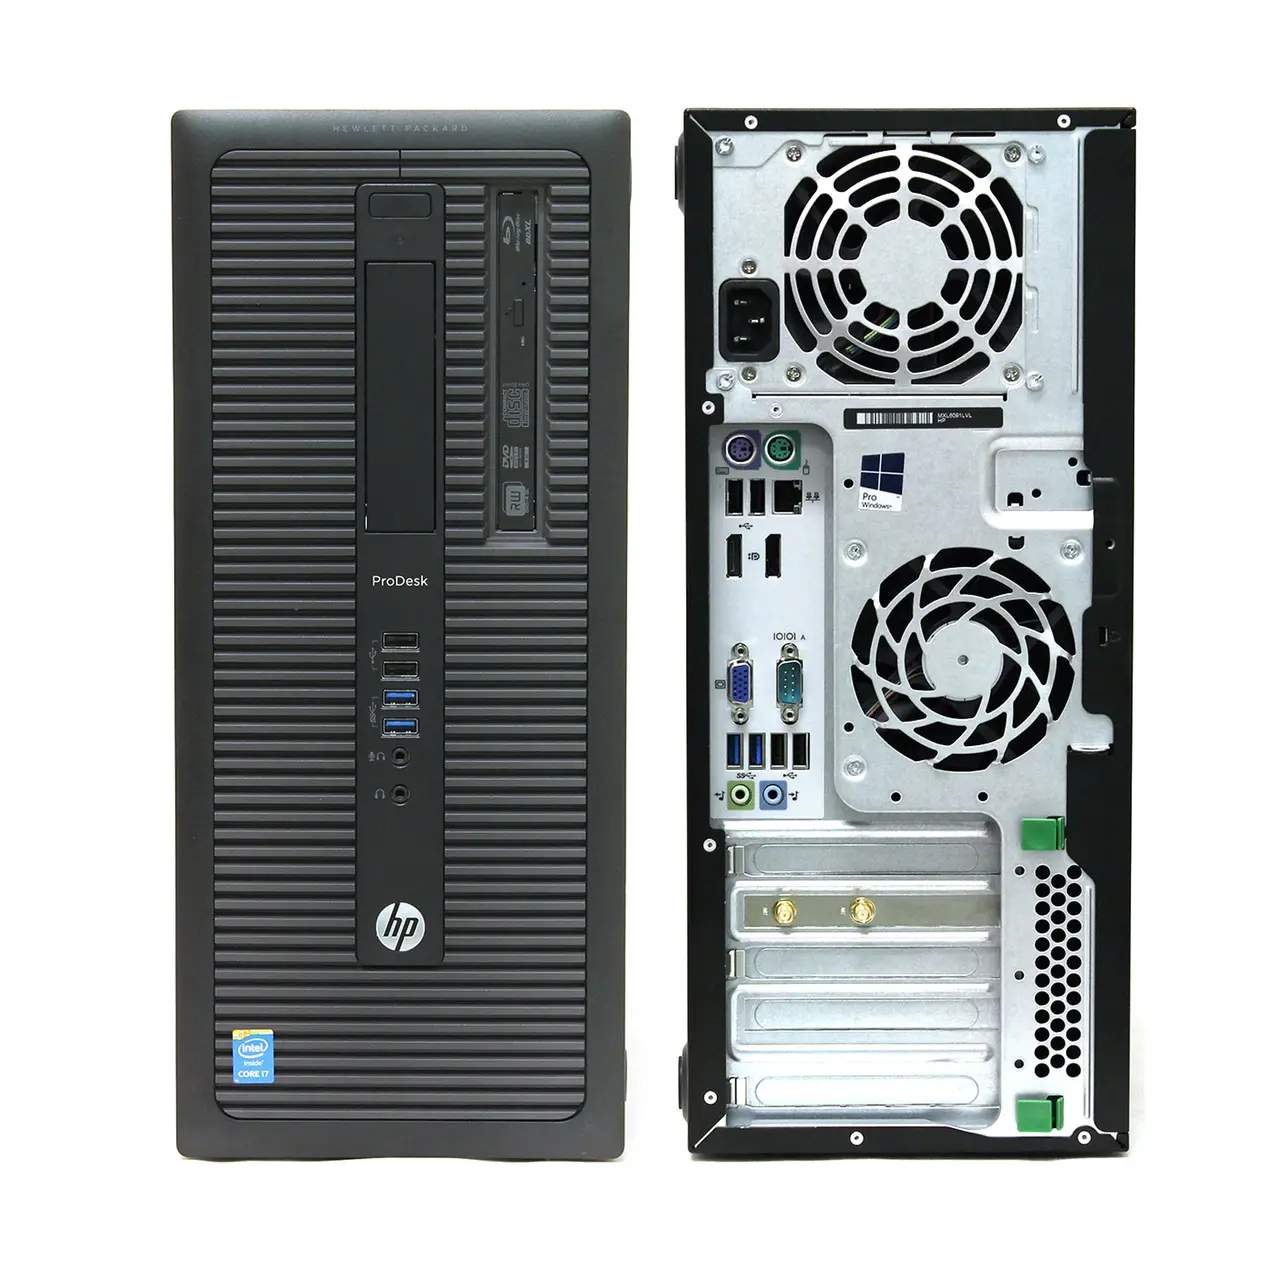 Hewlett packard hp prodesk 600 g1 twr - powerful desktop computer with bluetooth